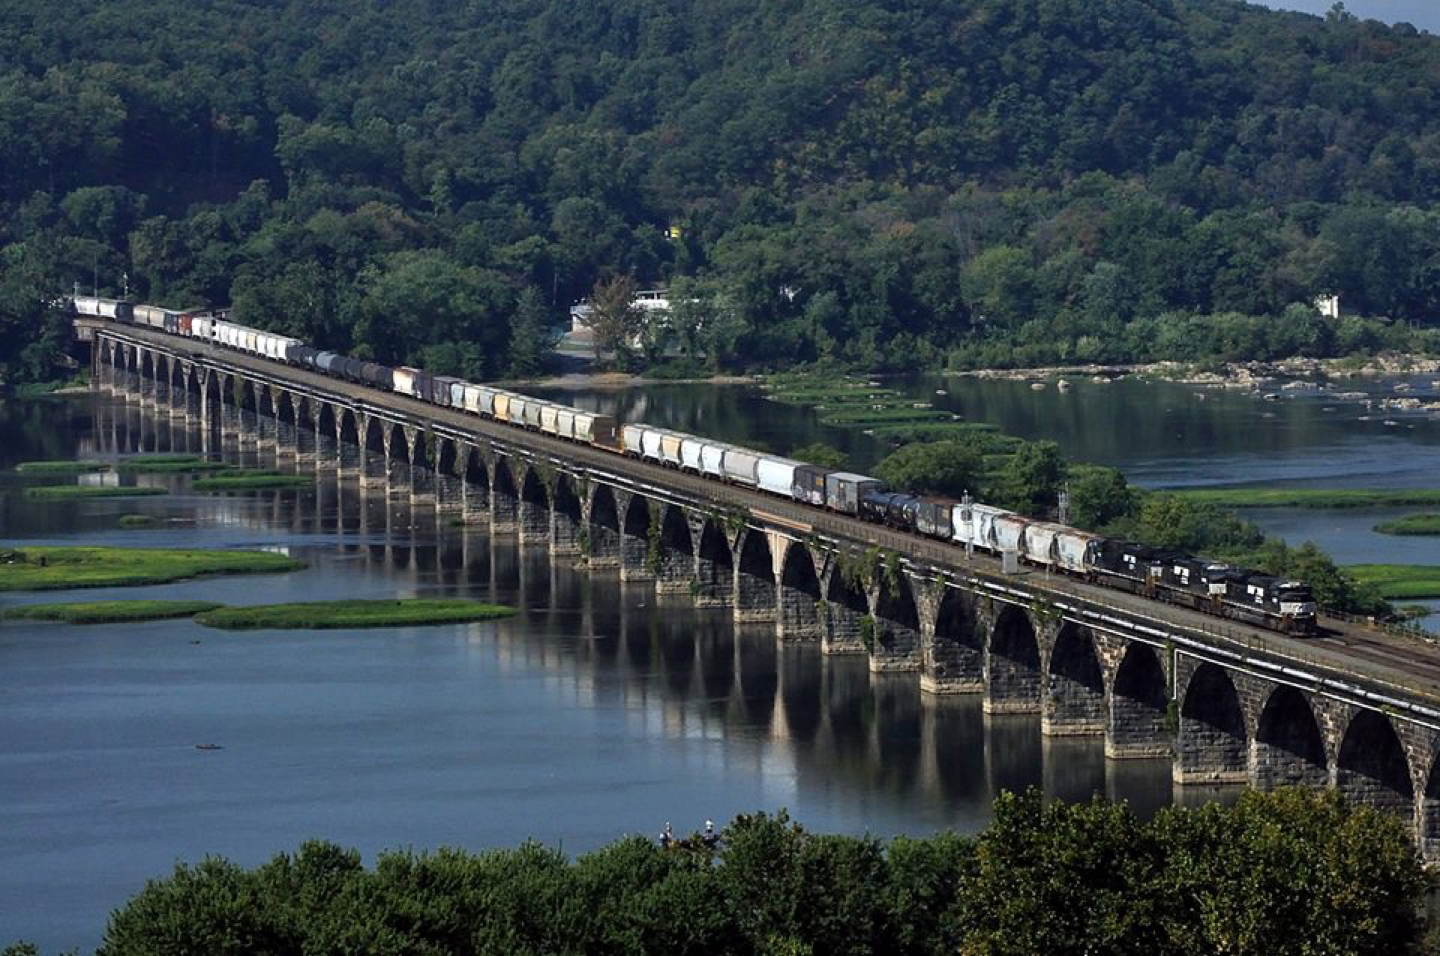 A long, modern freiight train crosses the famed "Rockvale Bridge" just west of Harrisburg, PA